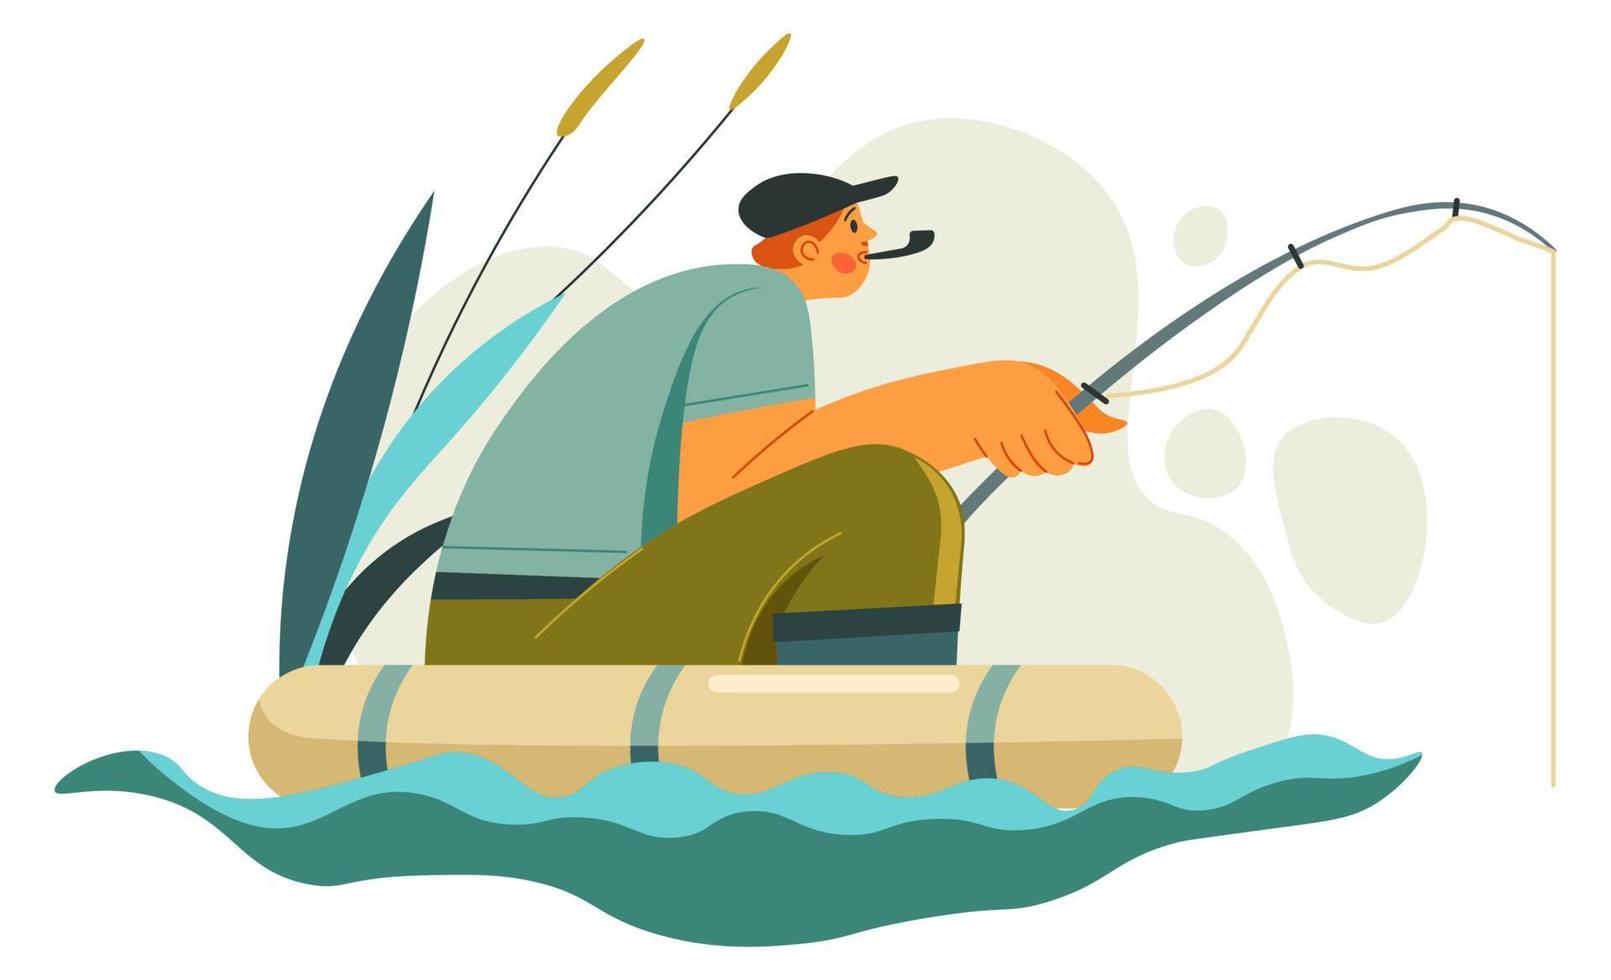 Mann mit Angelrute sitzt im Boot auf dem See vektor